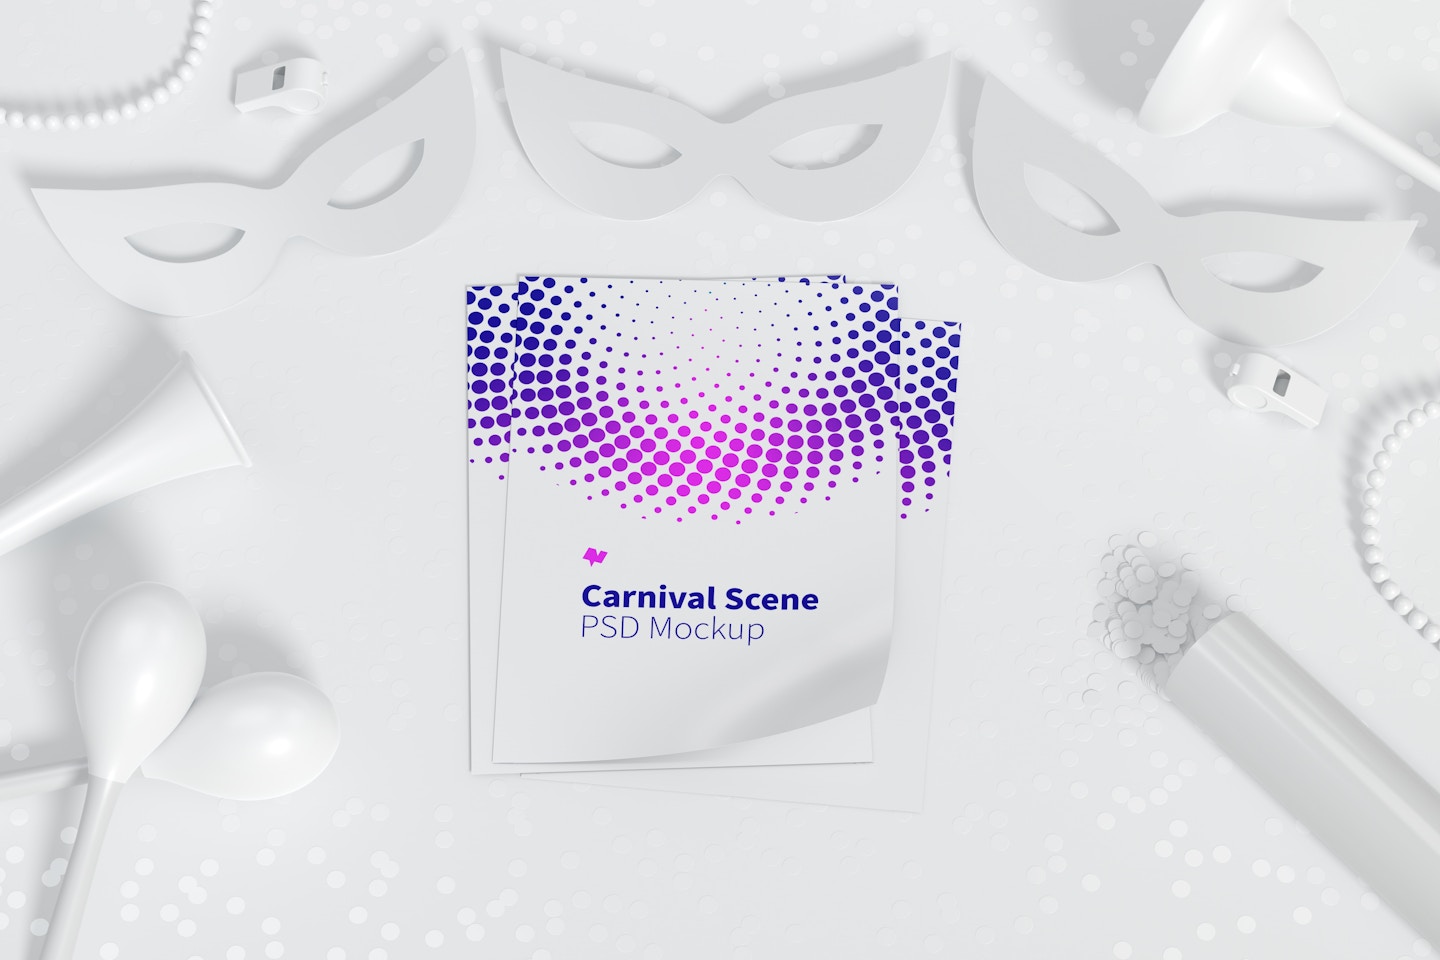 Maqueta de Escena de Carnaval con Flyer, Vista Superior